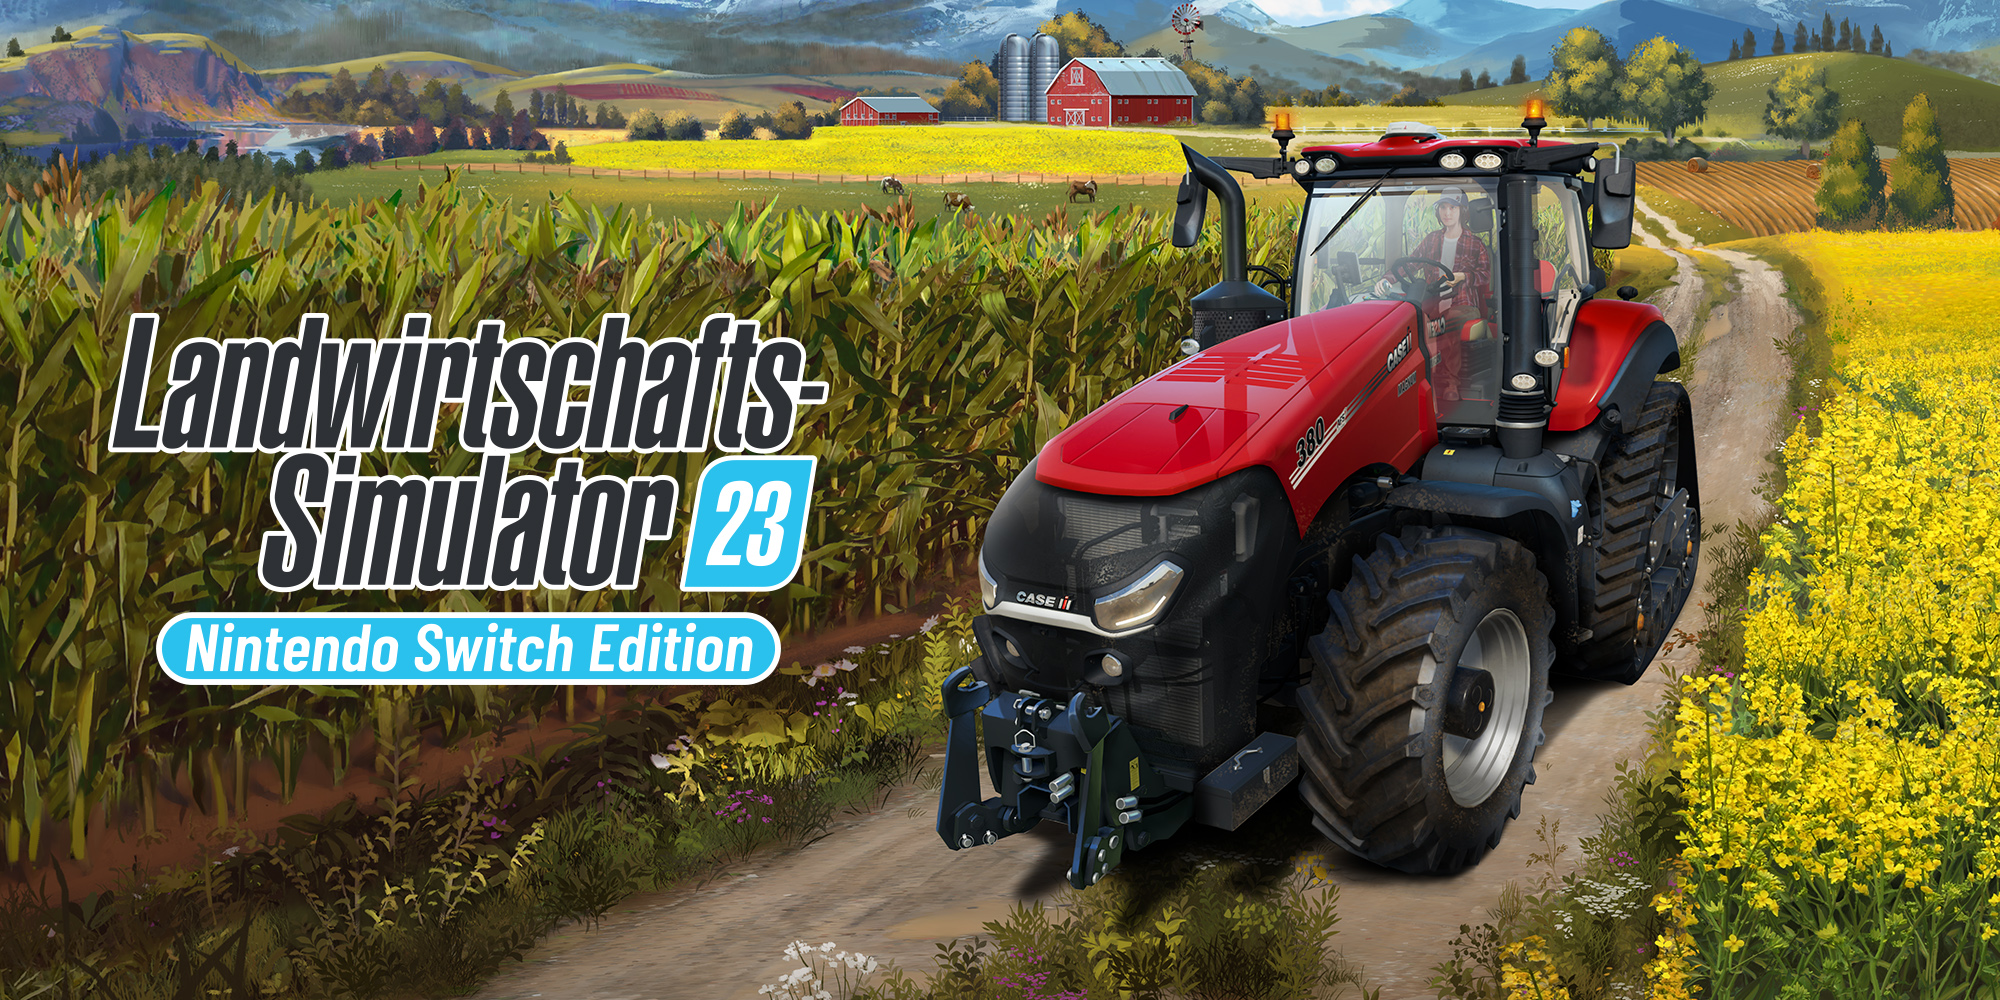 Landwirtschafts-Simulator 23“: Hol dir den Farming-Hit für die